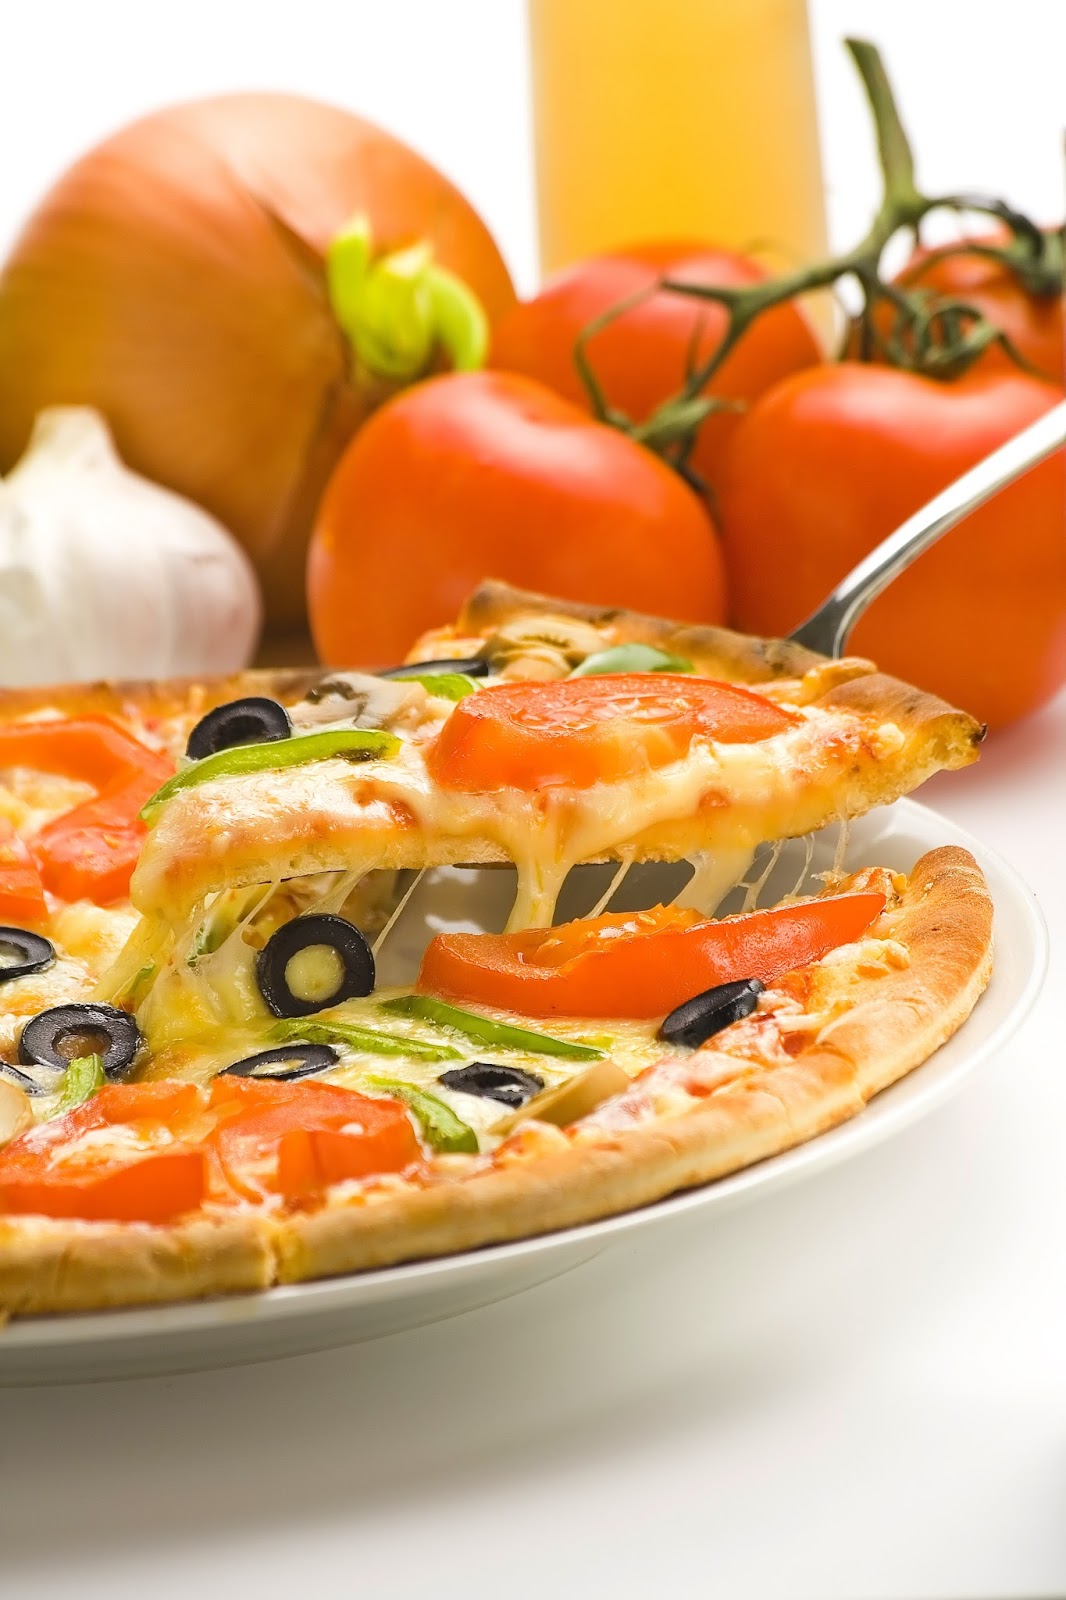 Good Pizza, Great Pizza: um jogo sobre ter uma pizzaria e fazer pizzas que  me fez chorar - Combo Infinito